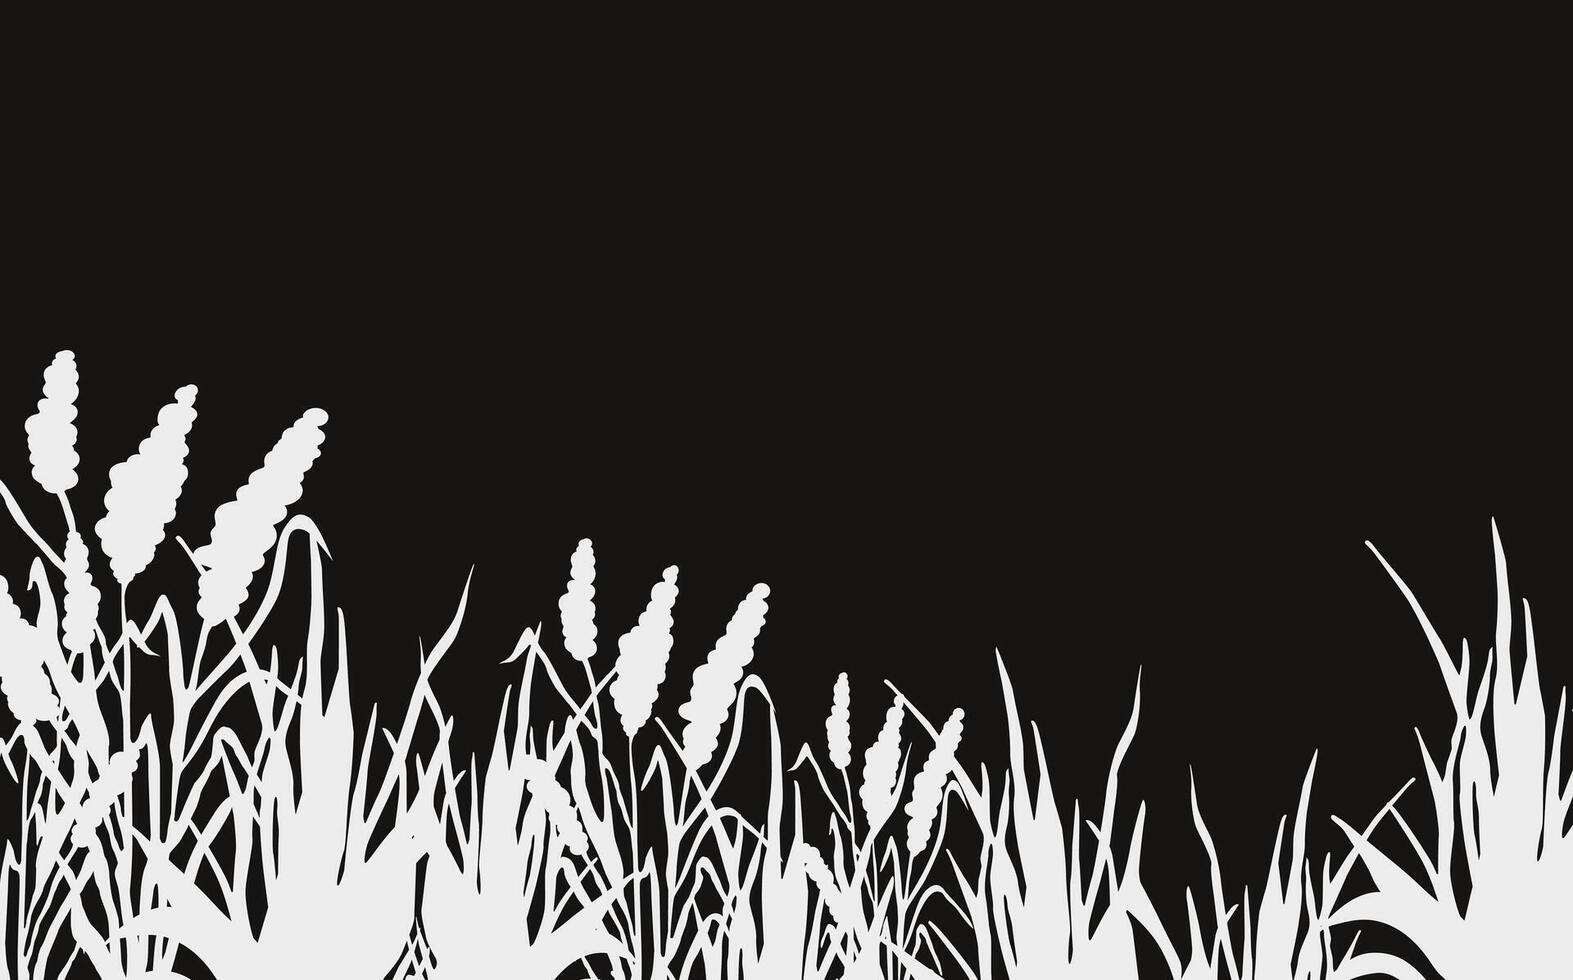 Bild von ein einfarbig Schilf, Gras oder Rohrkolben auf ein Weiß hintergrund.isoliert Vektor Zeichnung.schwarz Gras Grafik Silhouette.